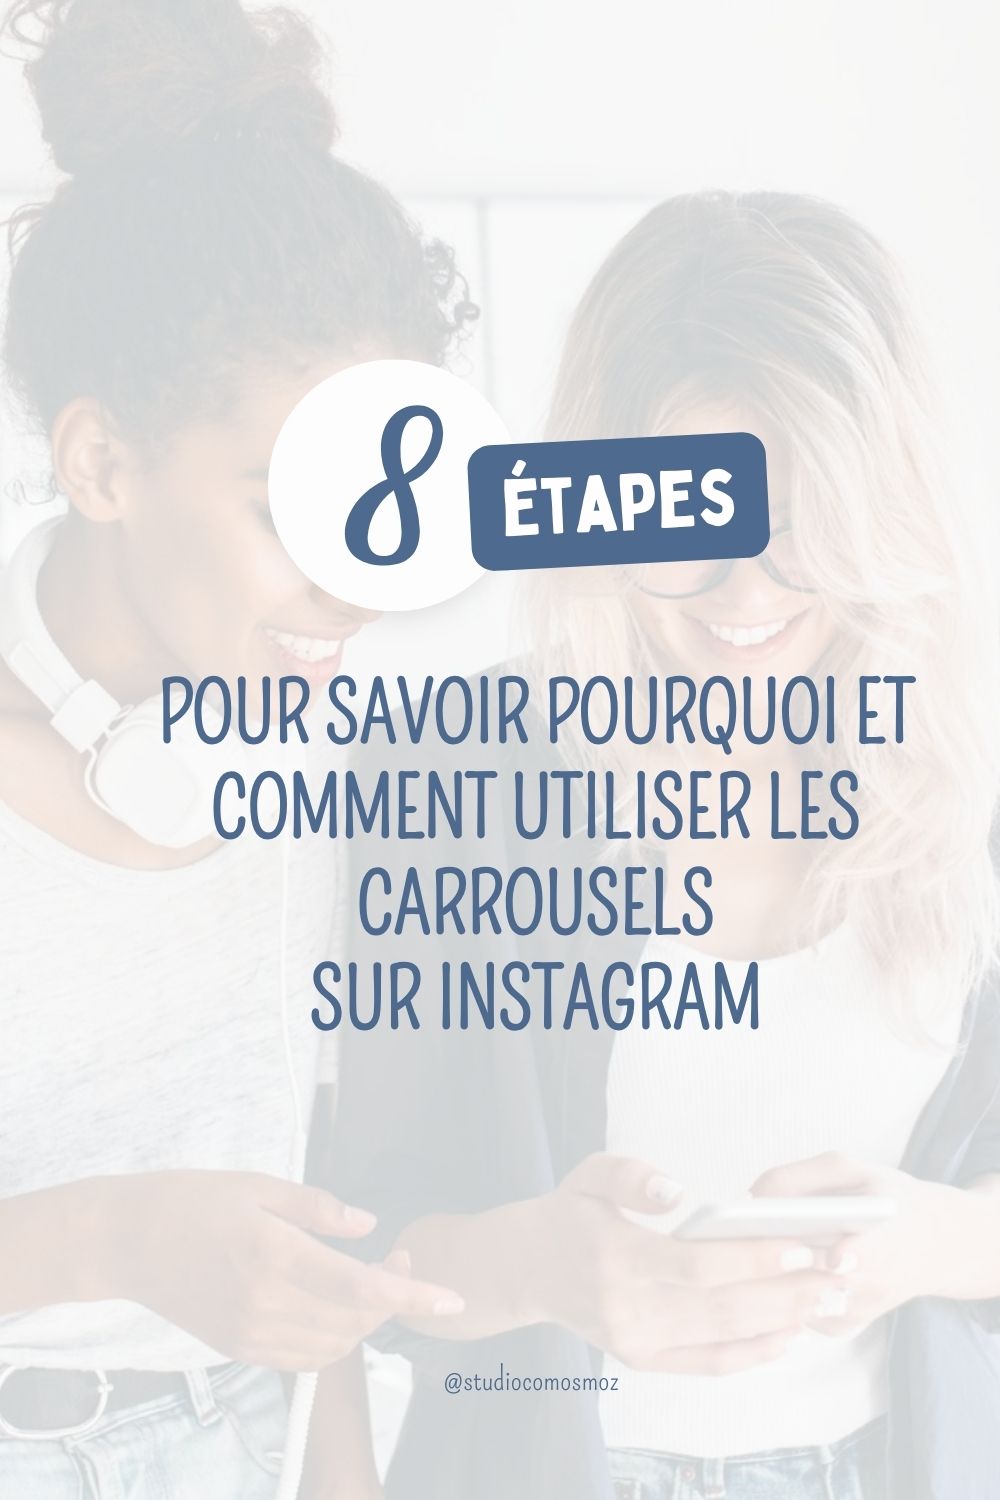 Pourquoi et comment utiliser les carrousels sur Instagram : Ton guide complet en 8 étapes